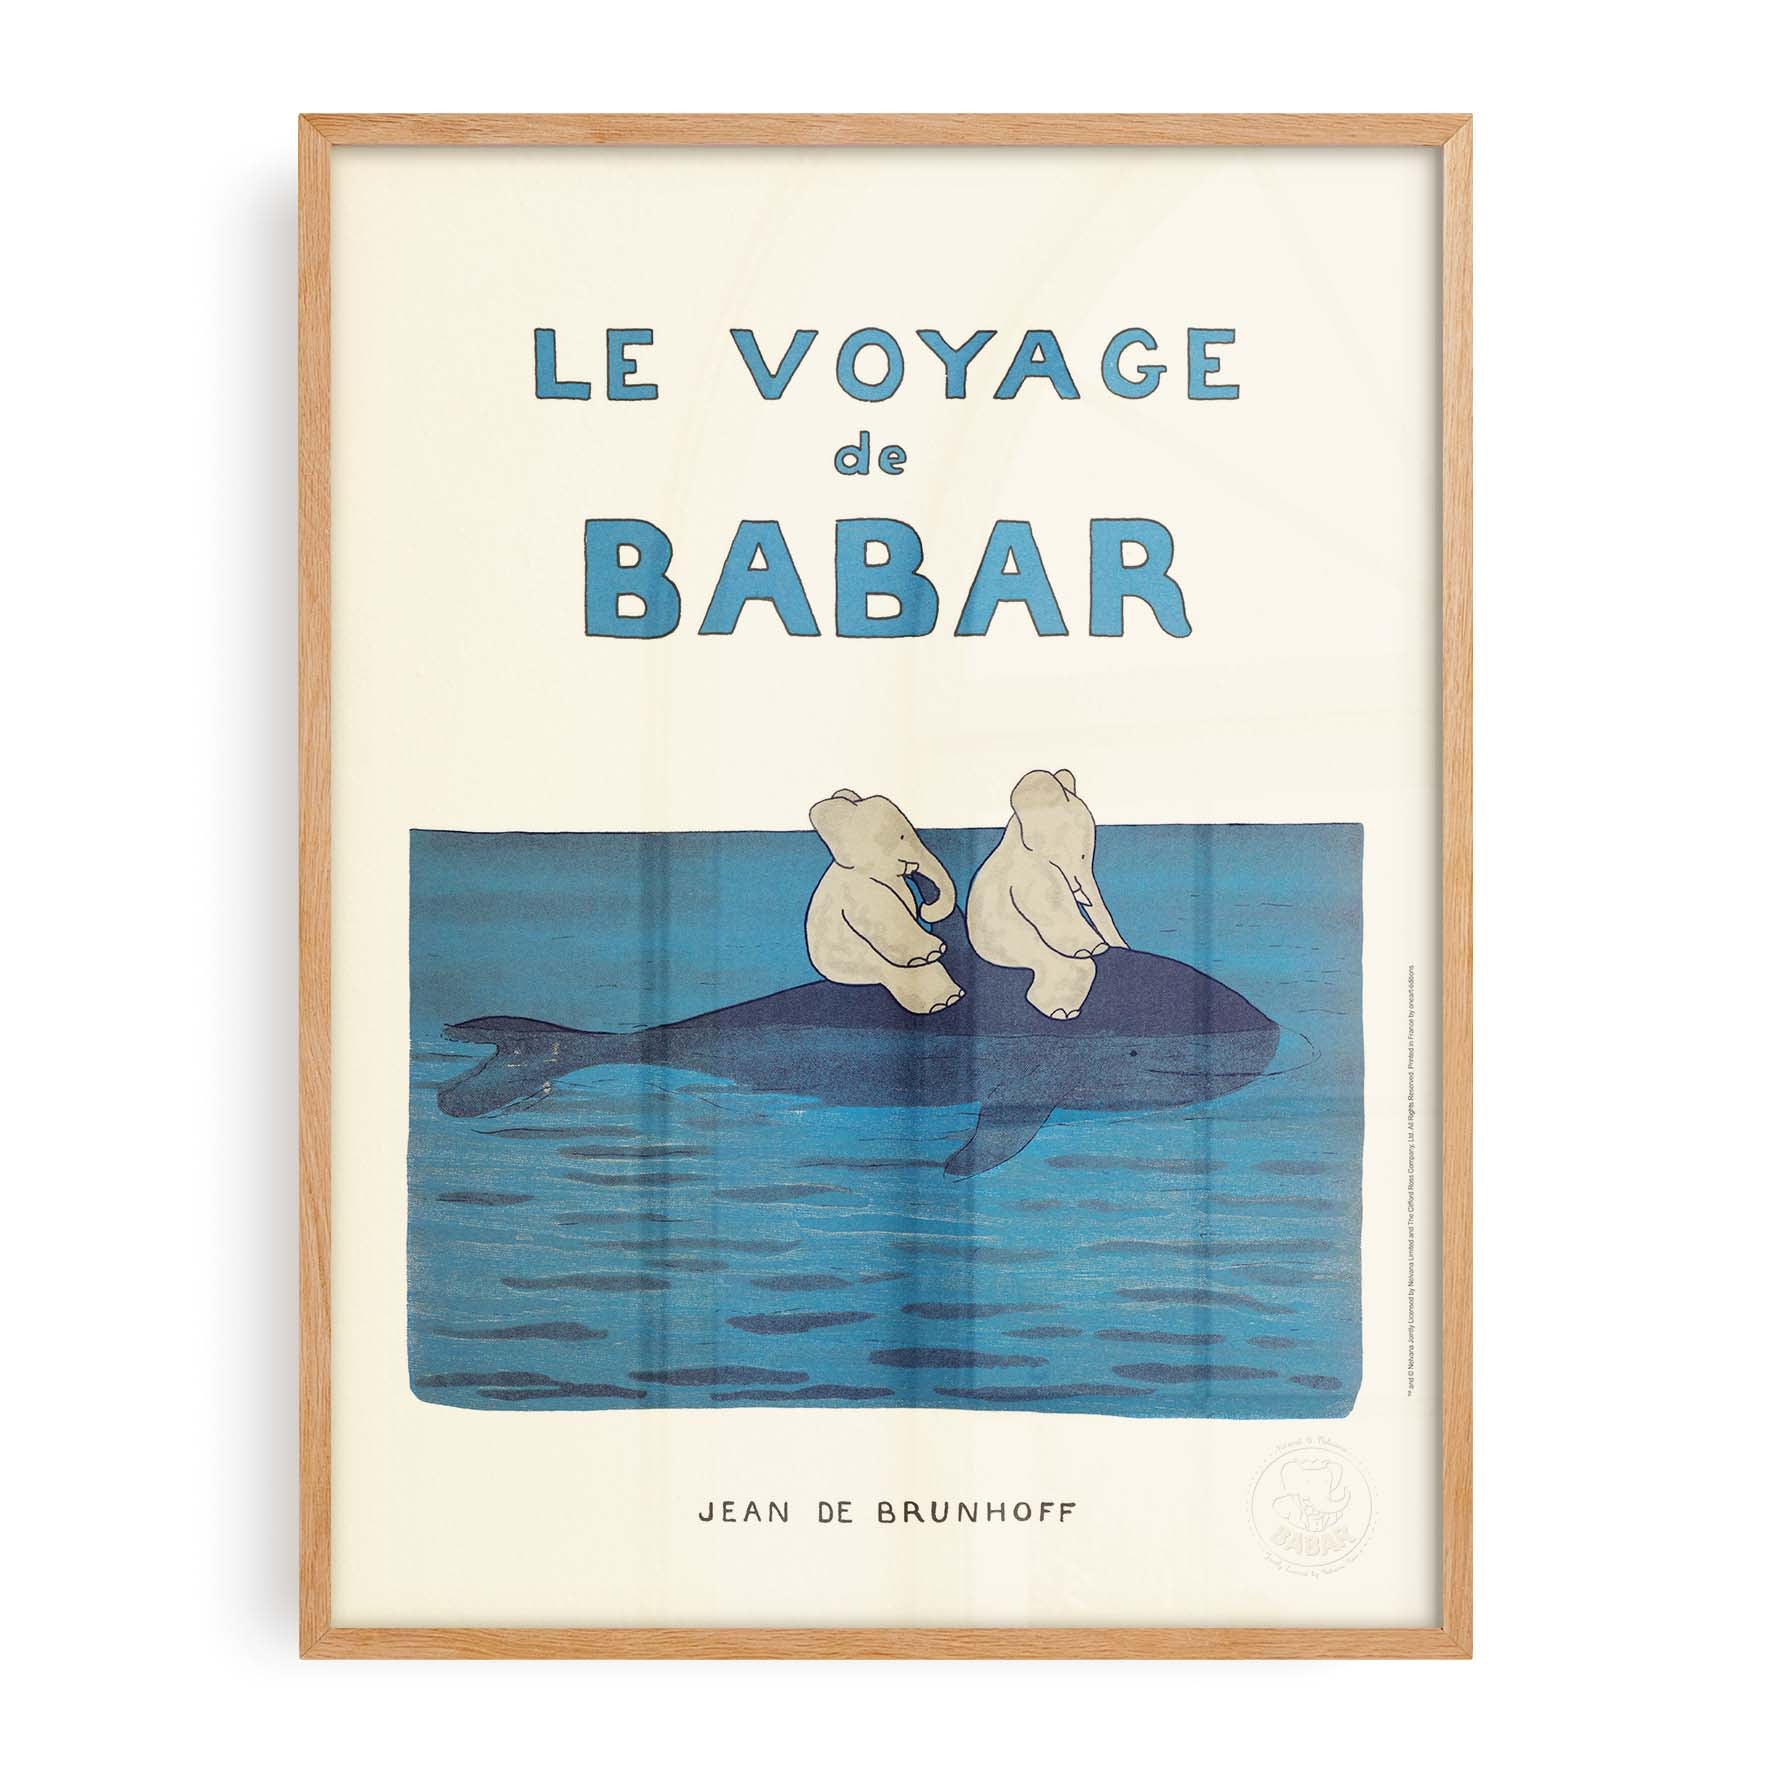 Affiche Le voyage de Babar-oneart.fr